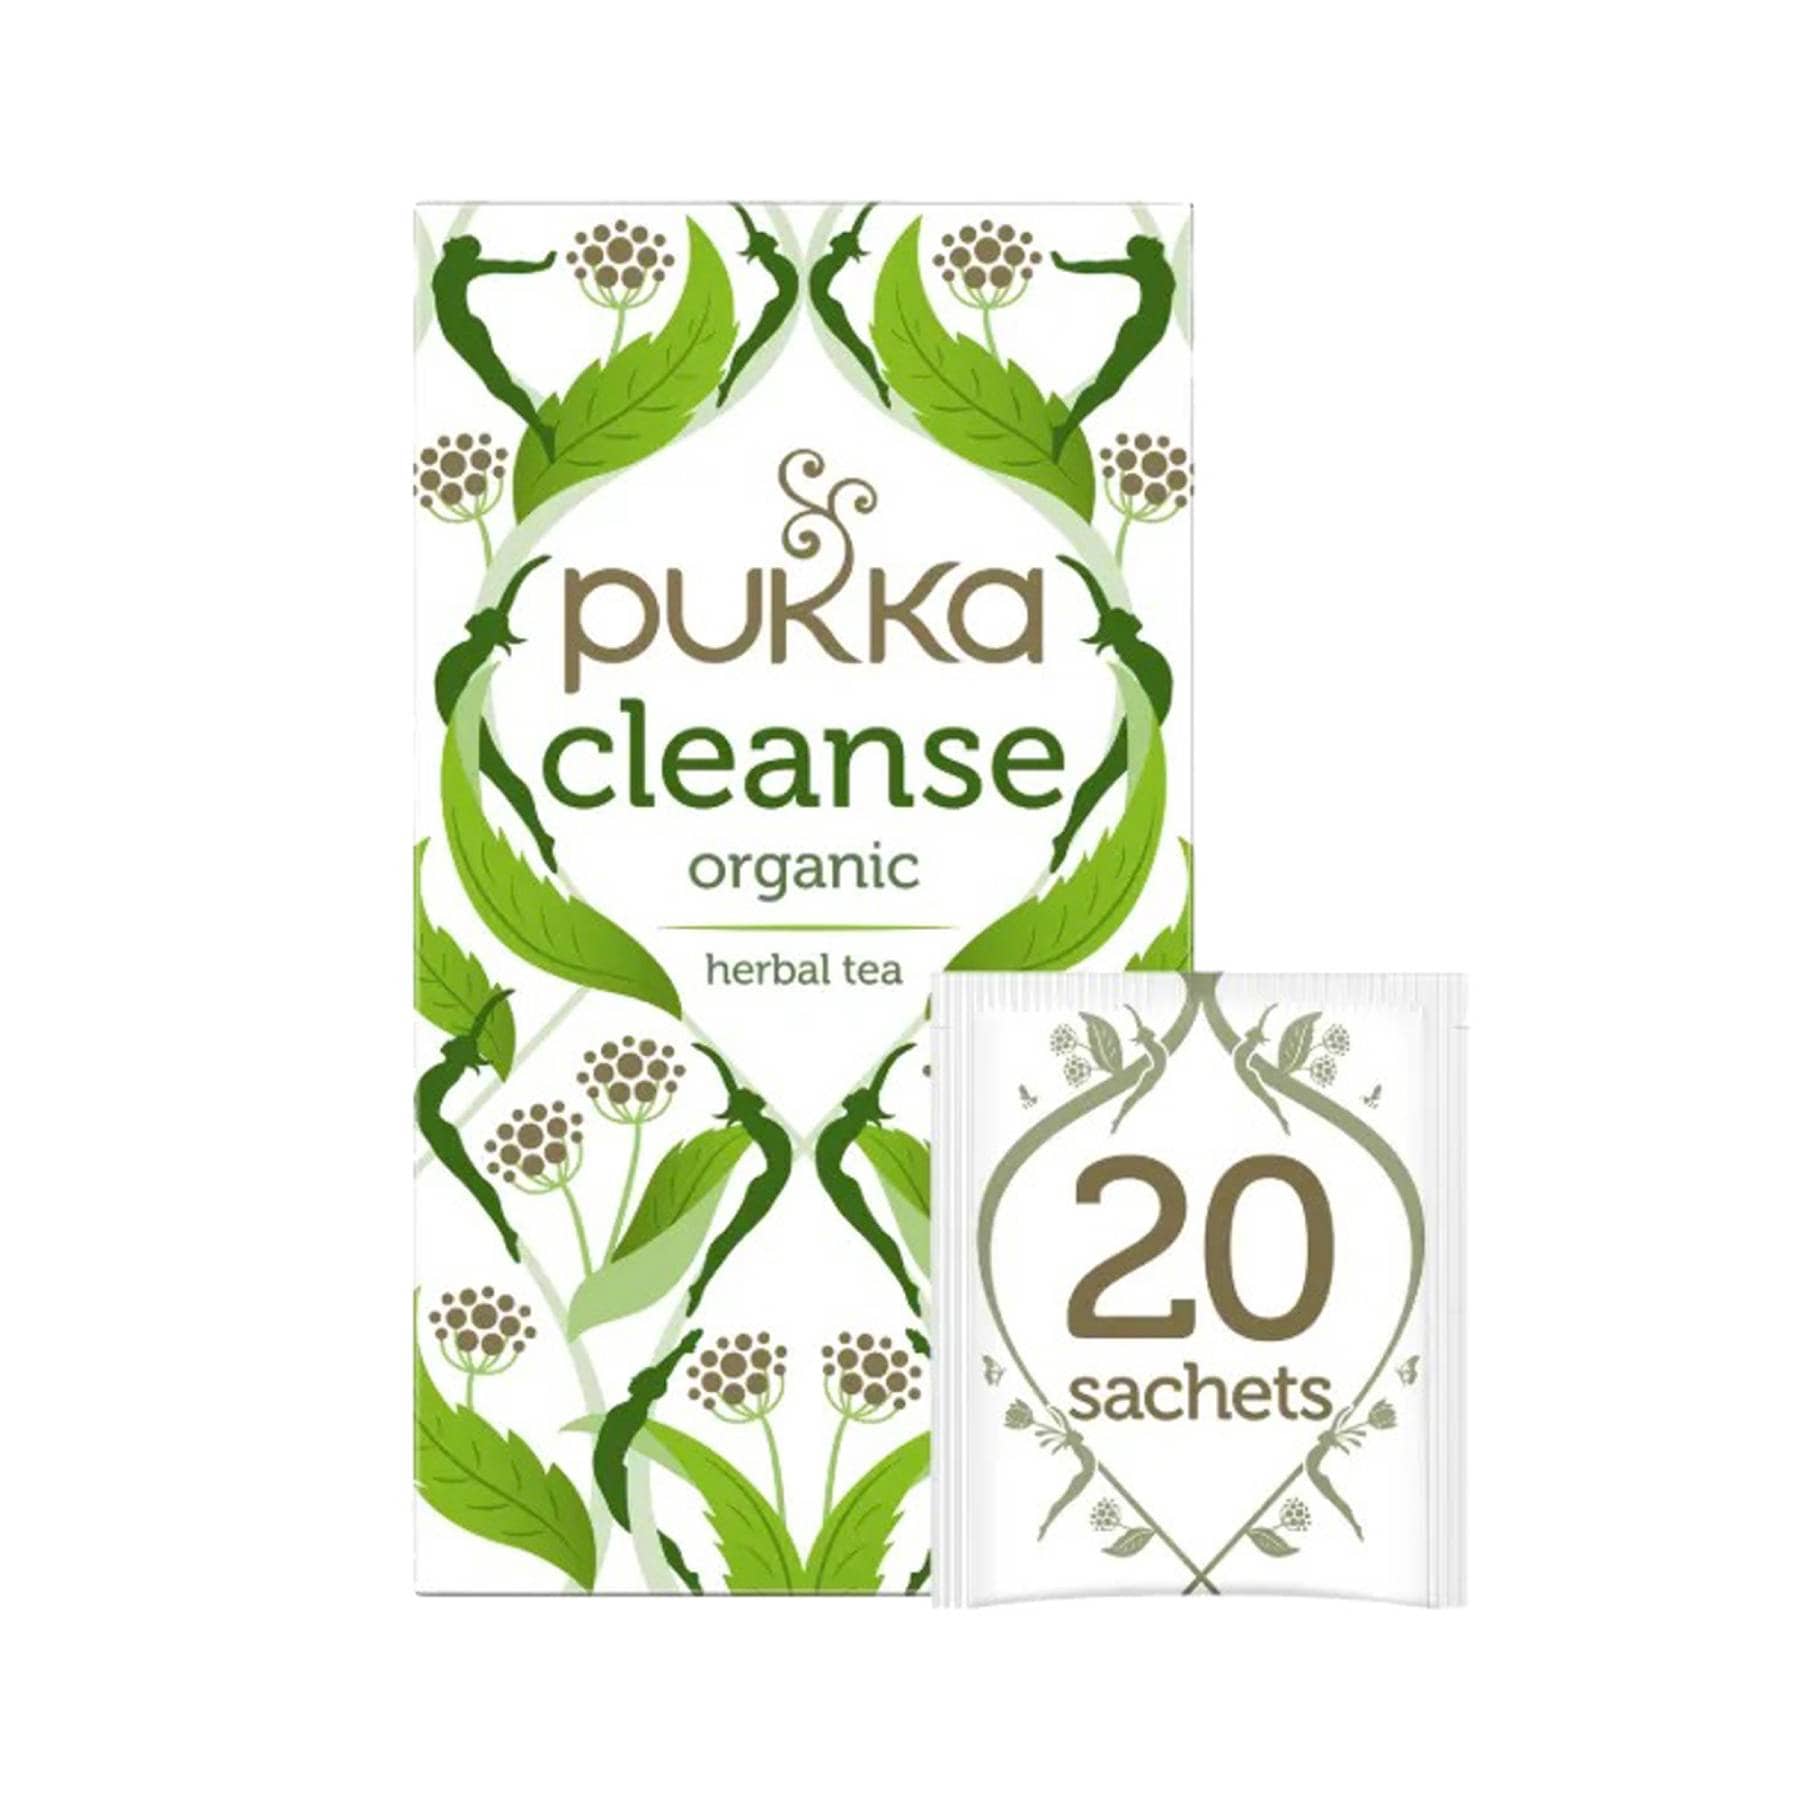 Pukka cleanse 20 tea bags